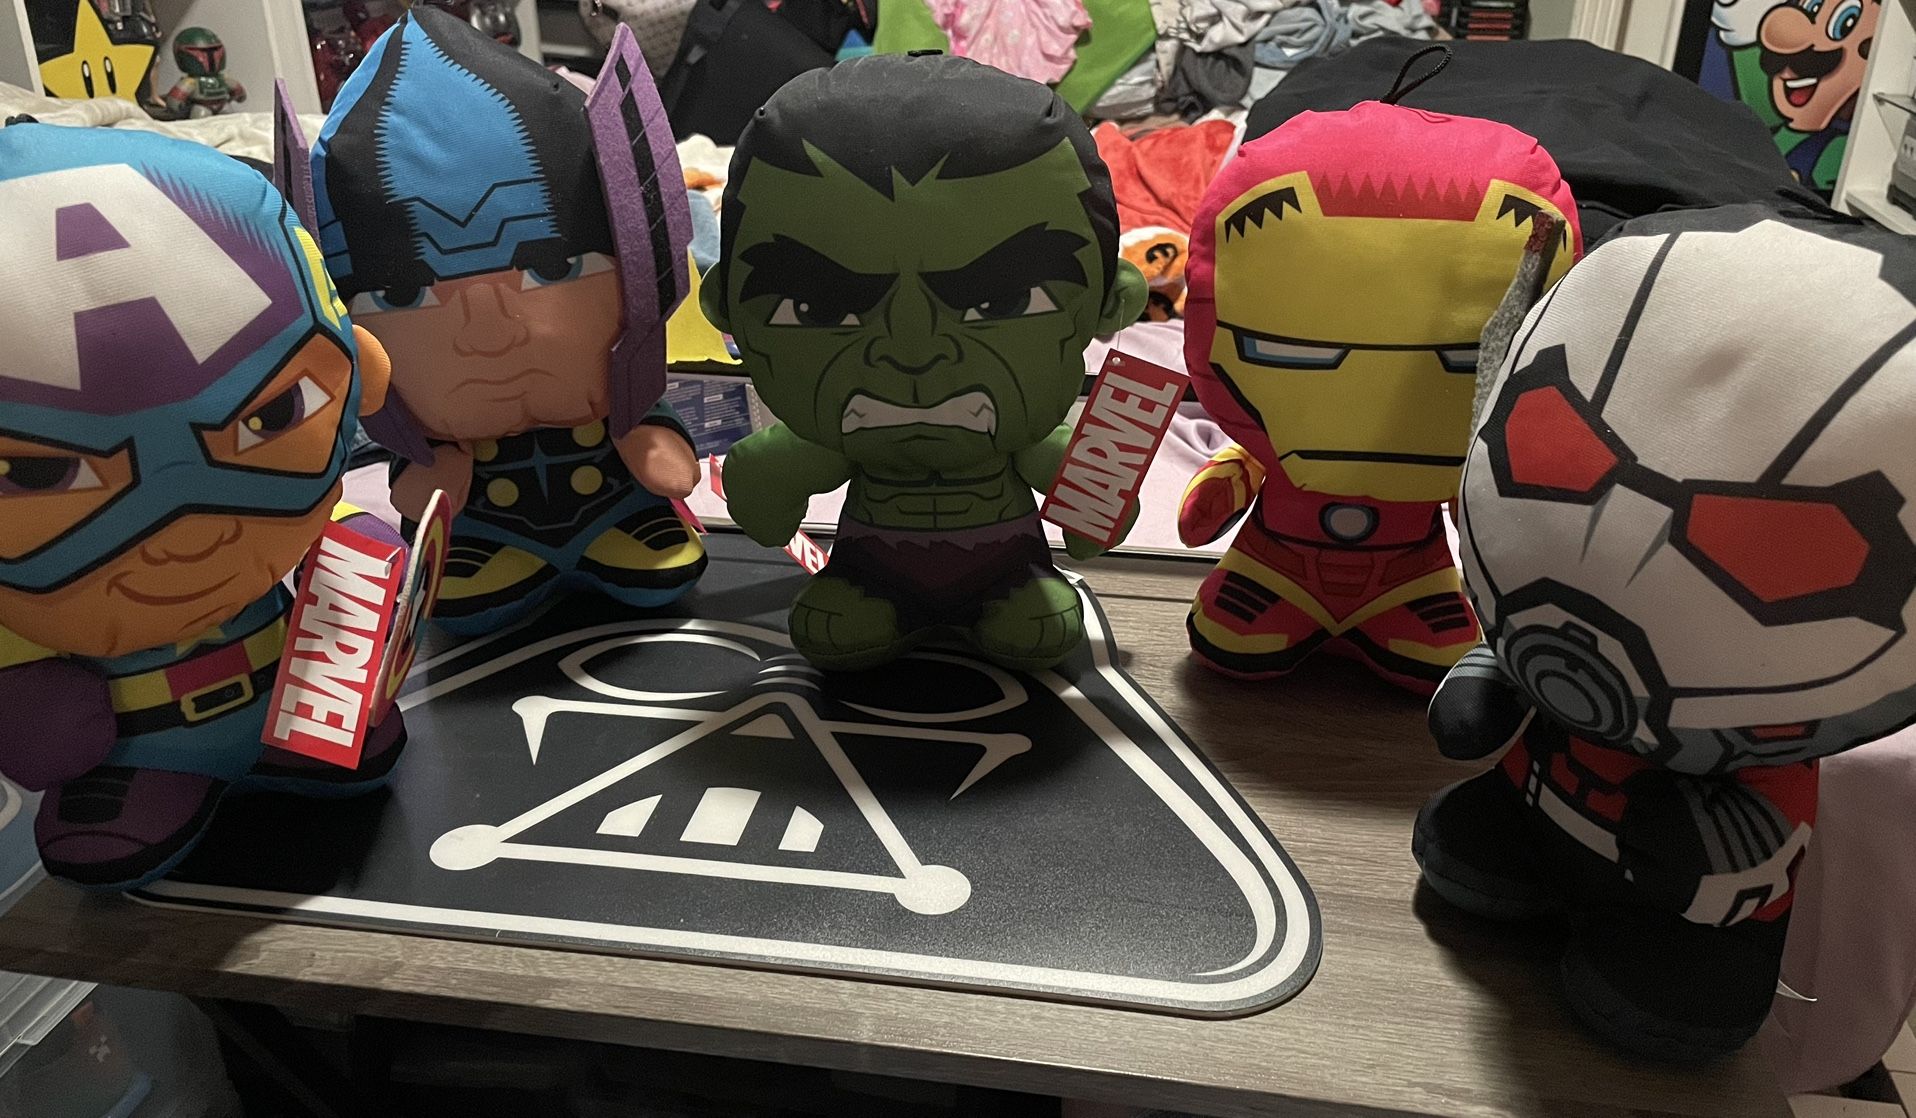 Marvel Avengers Plush 10” Plush Lot Of 5